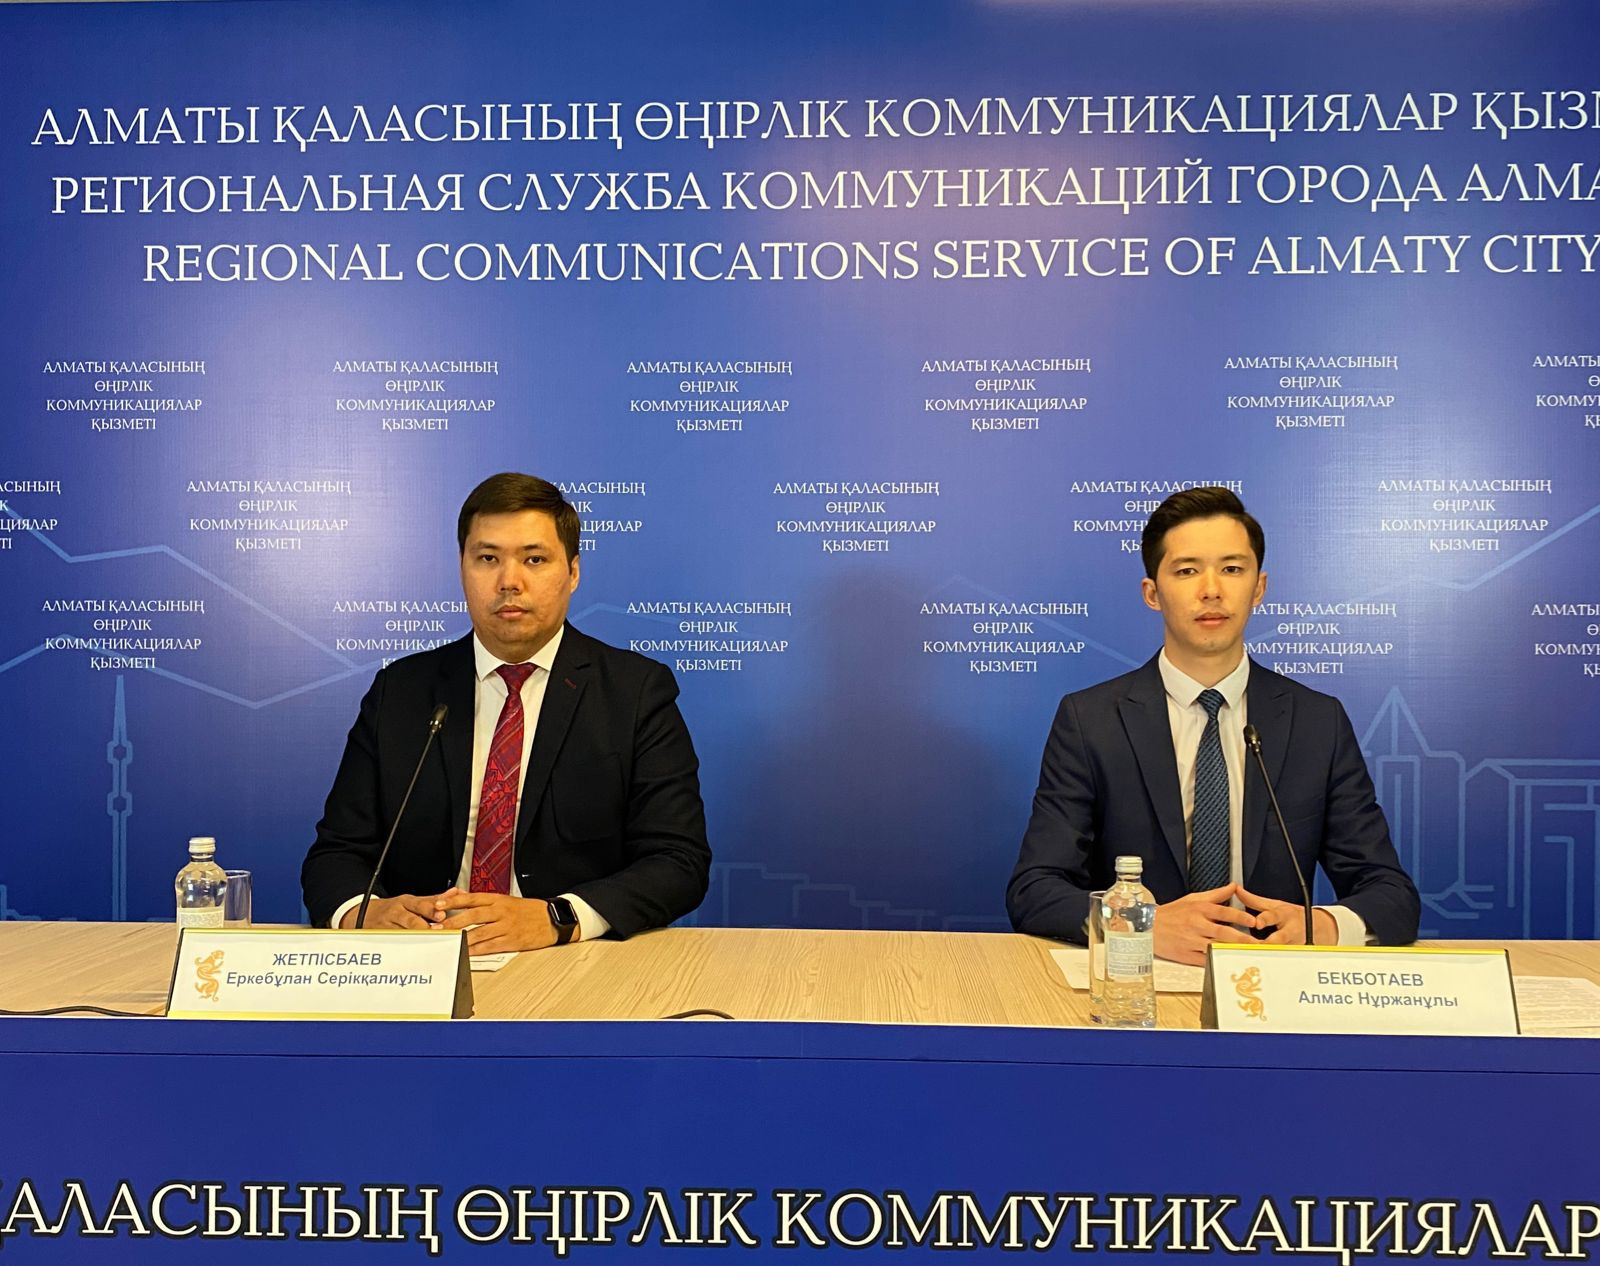 Адвокаты Алматы в 2022 году оказали бесплатную юридическую помощь более 10 тыс. гражданам  